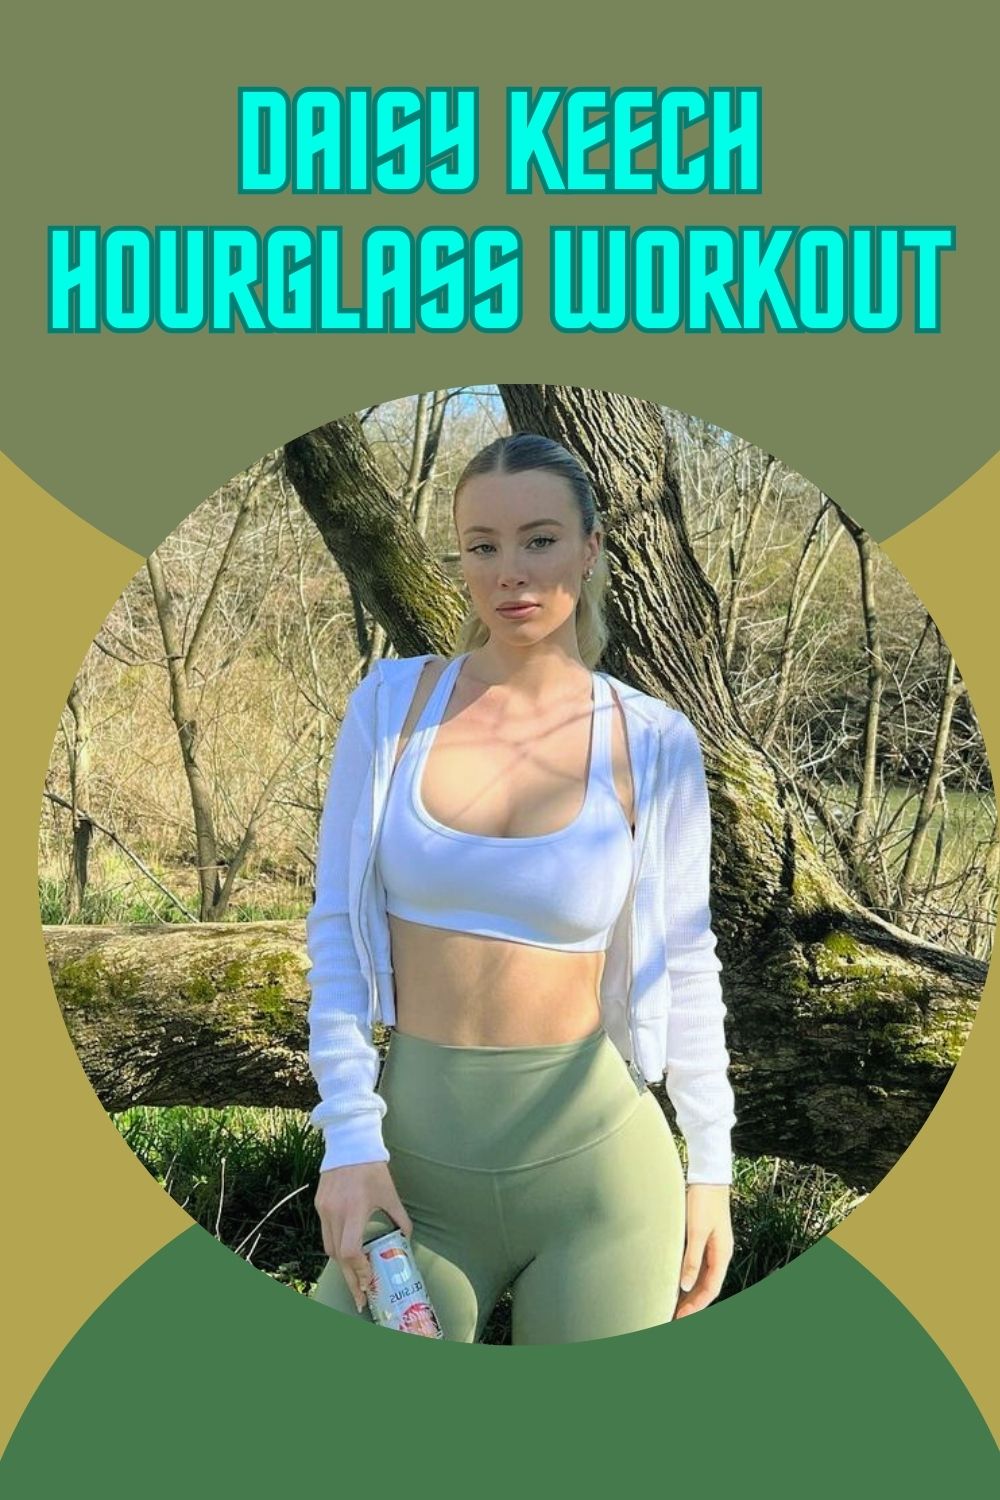 daisy keech hourglass workout